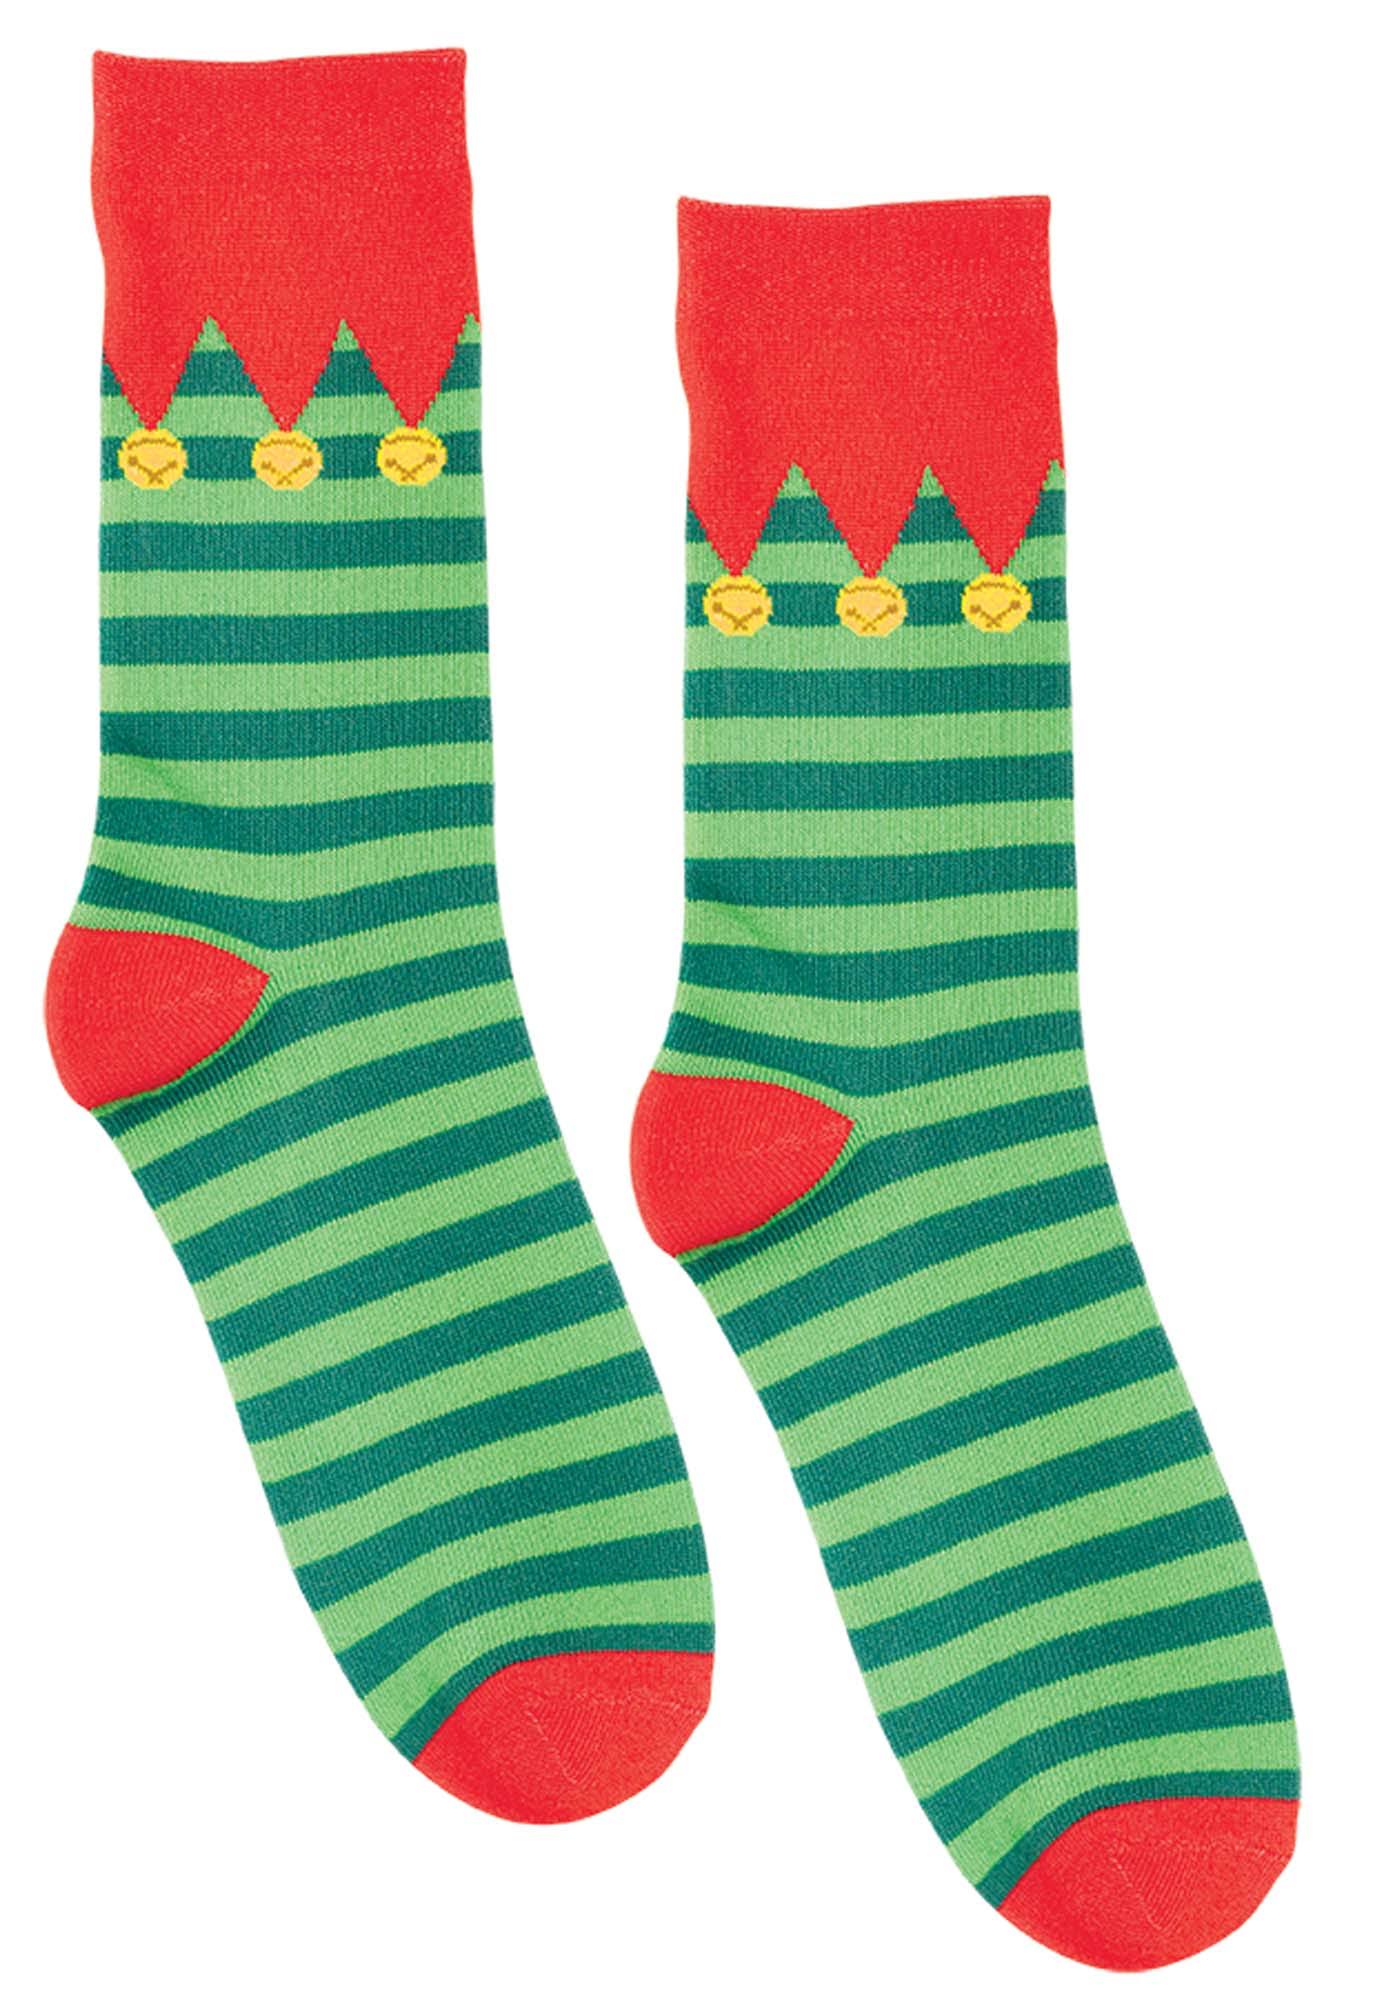 Amscan Christmas Crew Socks - 2ct, 4pk, 13.5"